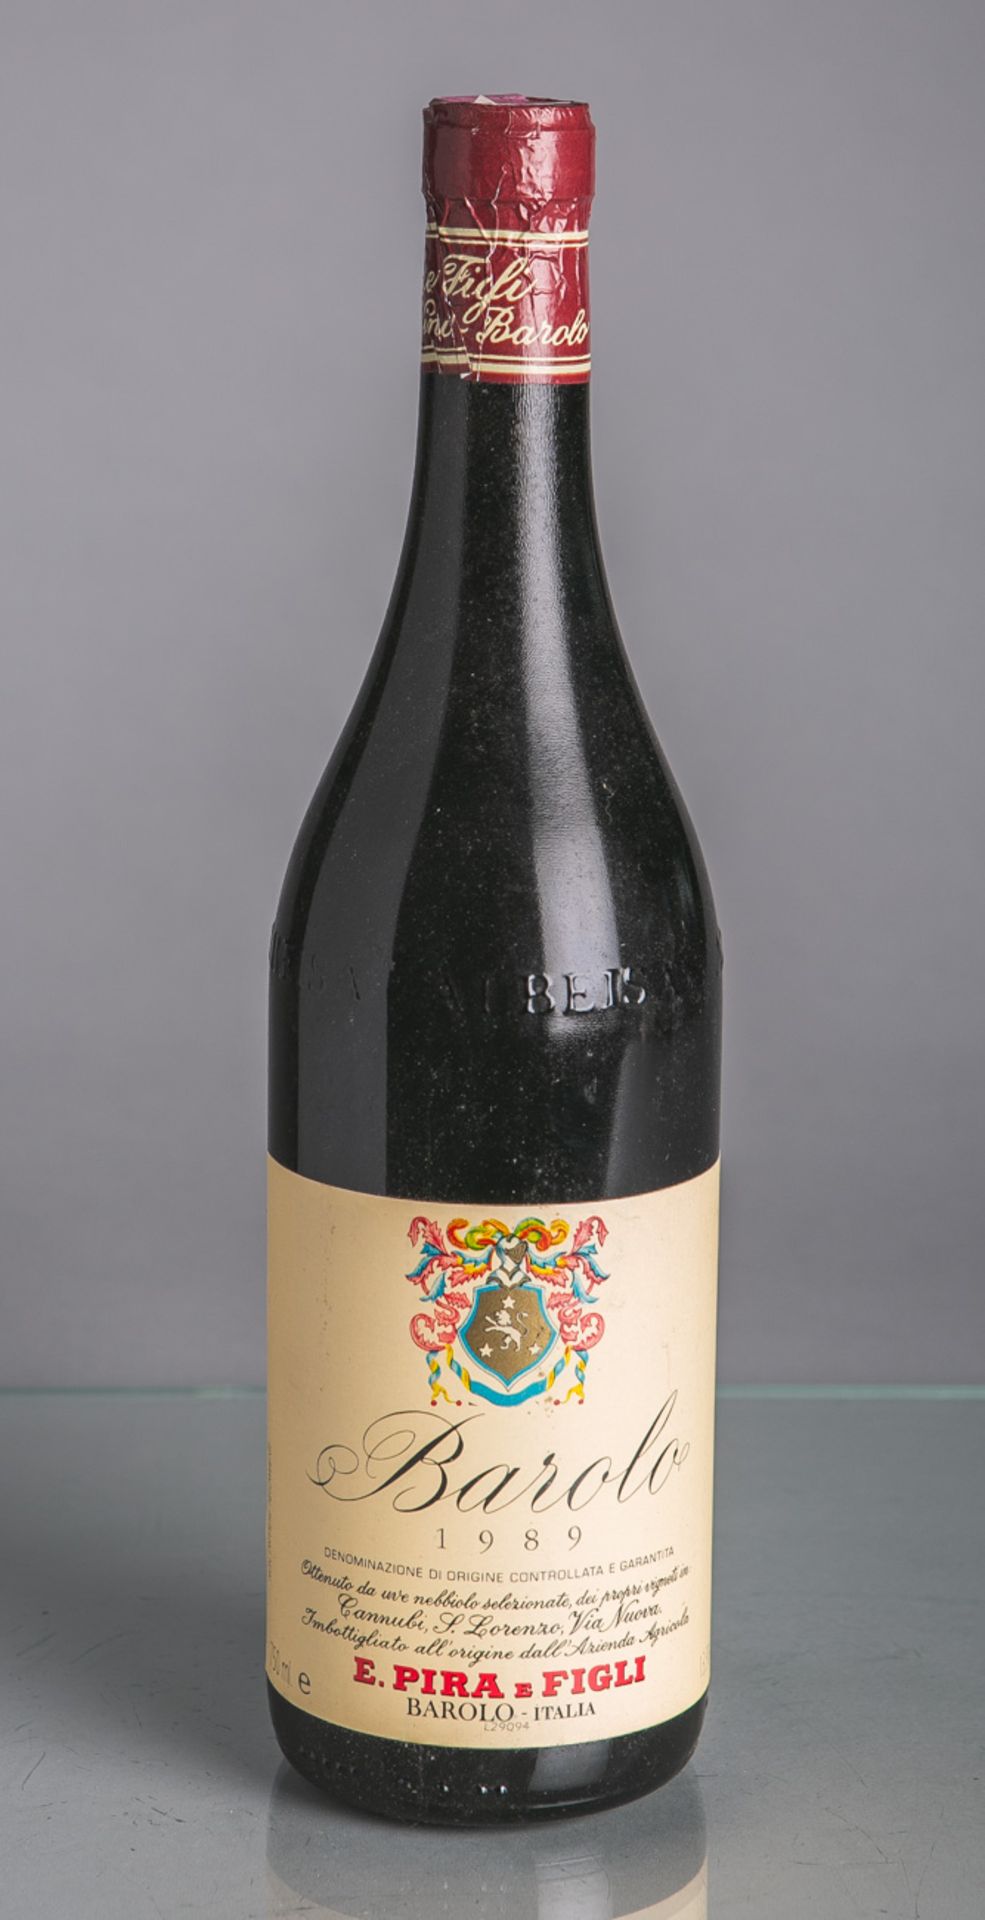 4 Flaschen von Barolo, E. Pira e Figli (1989), Rotwein, je 0,75 L. Im klimatisiertenWeinkeller